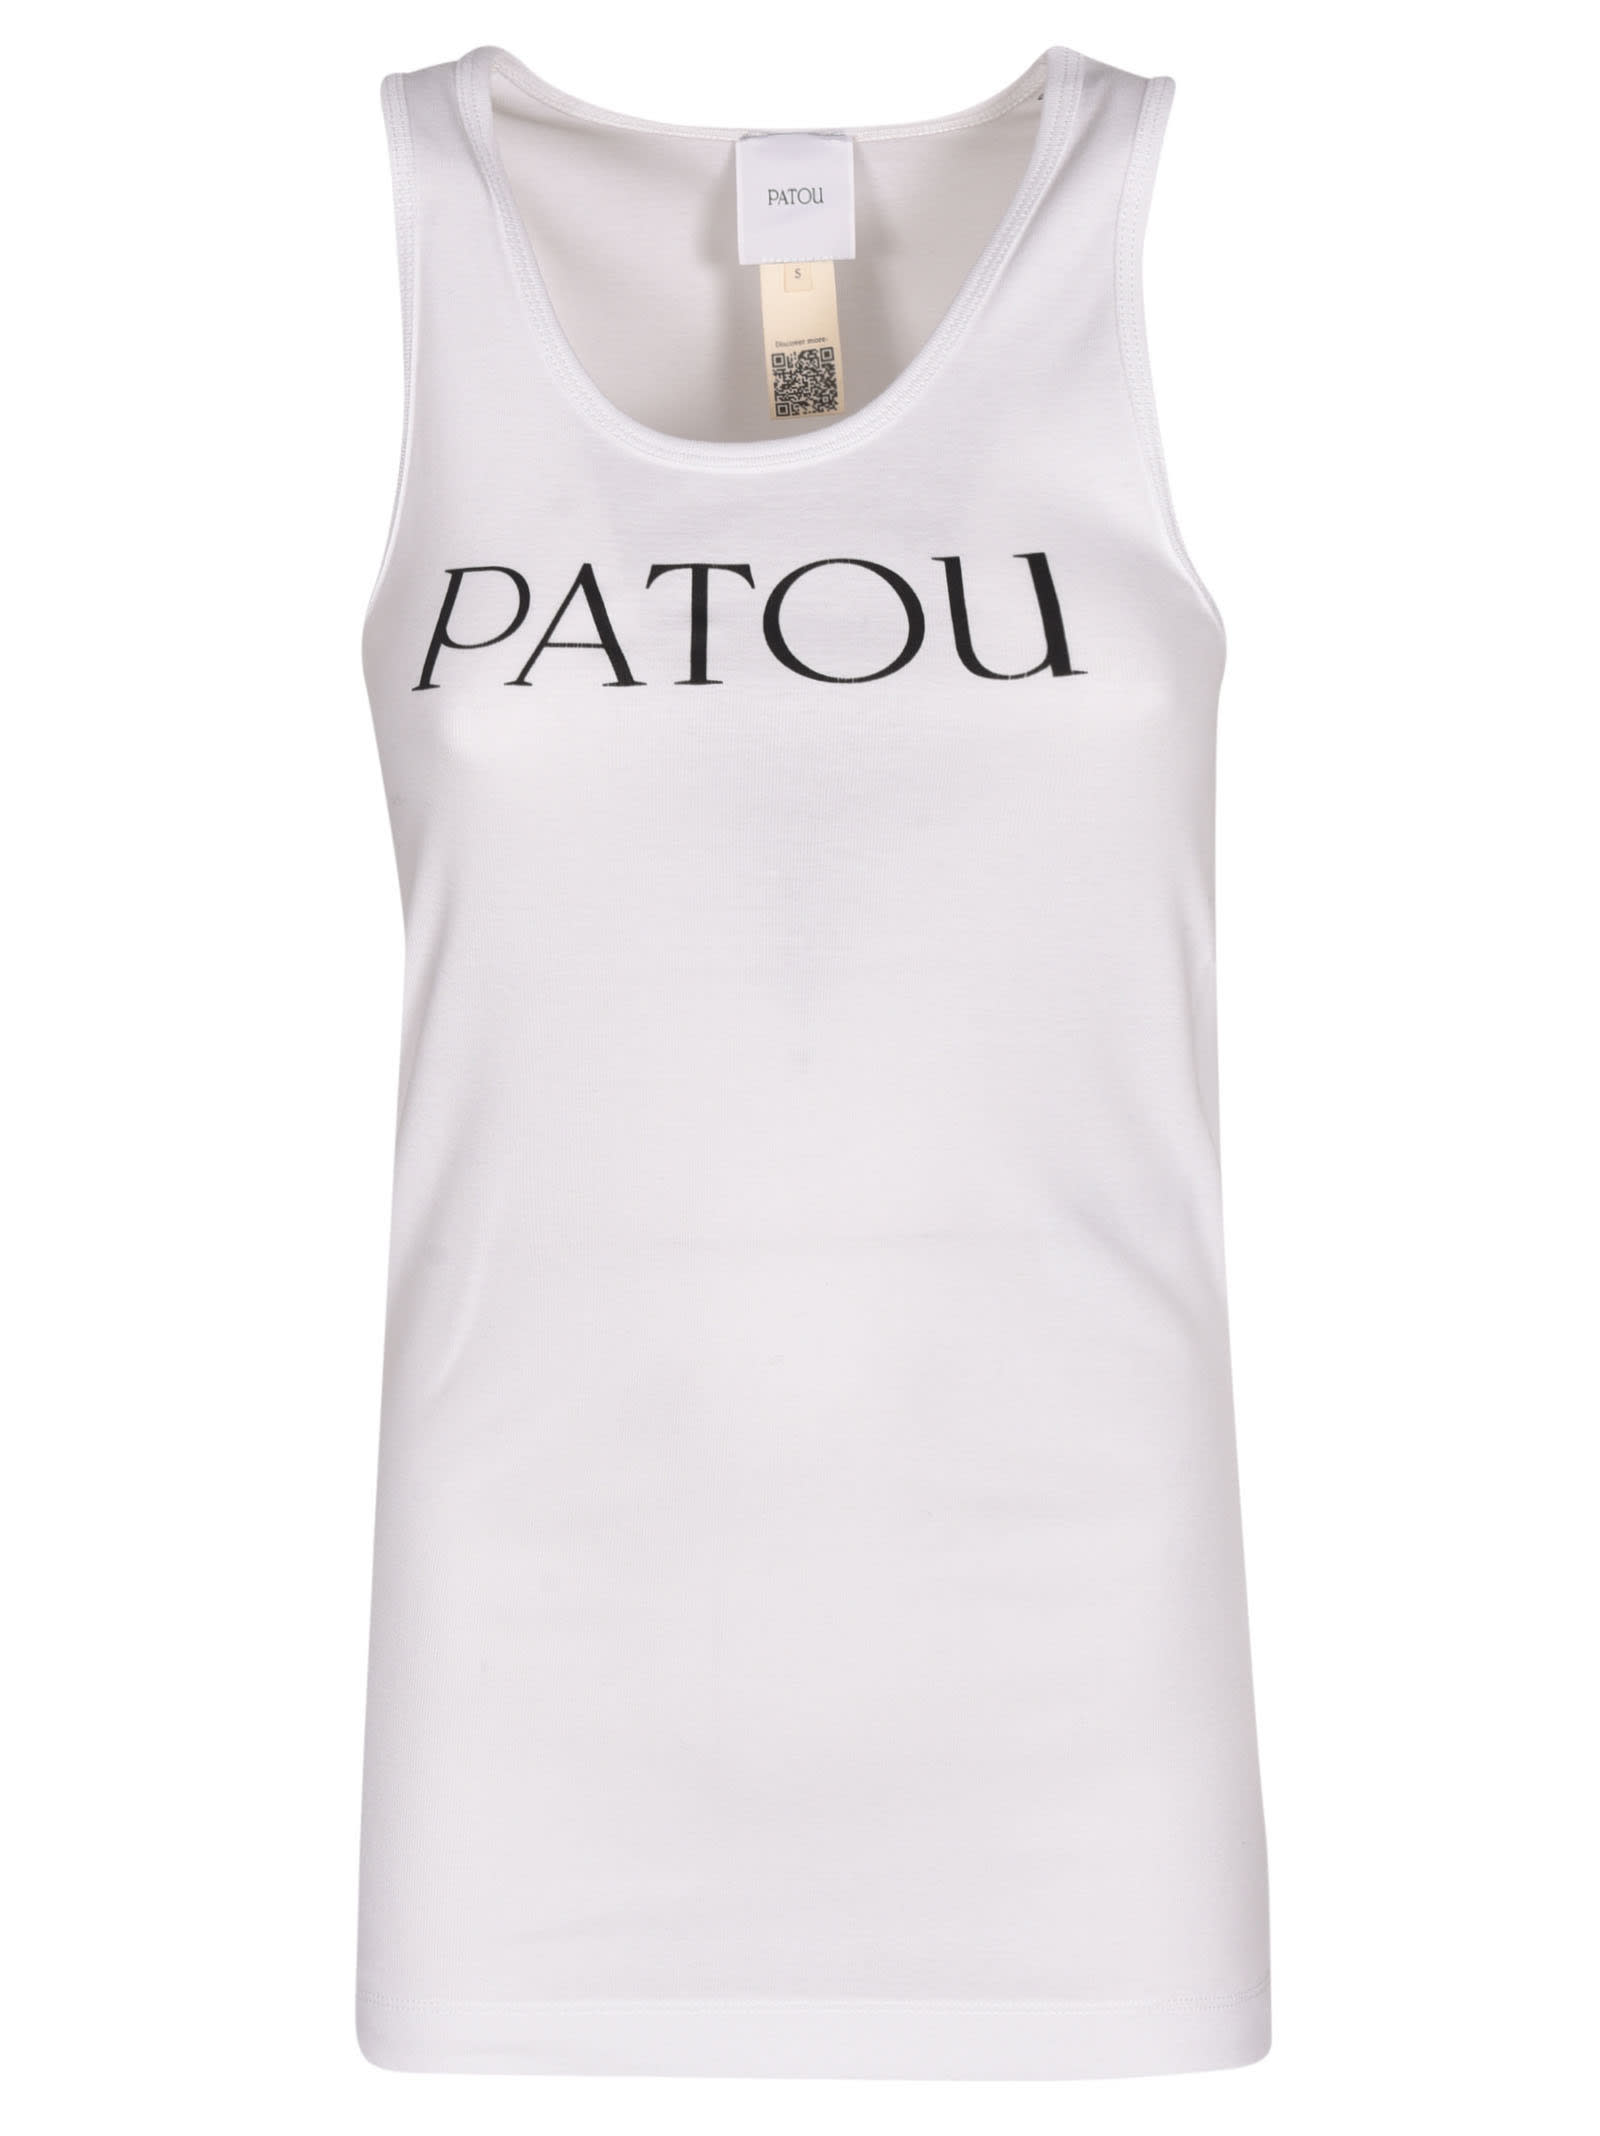 Patou Logo Tank Top